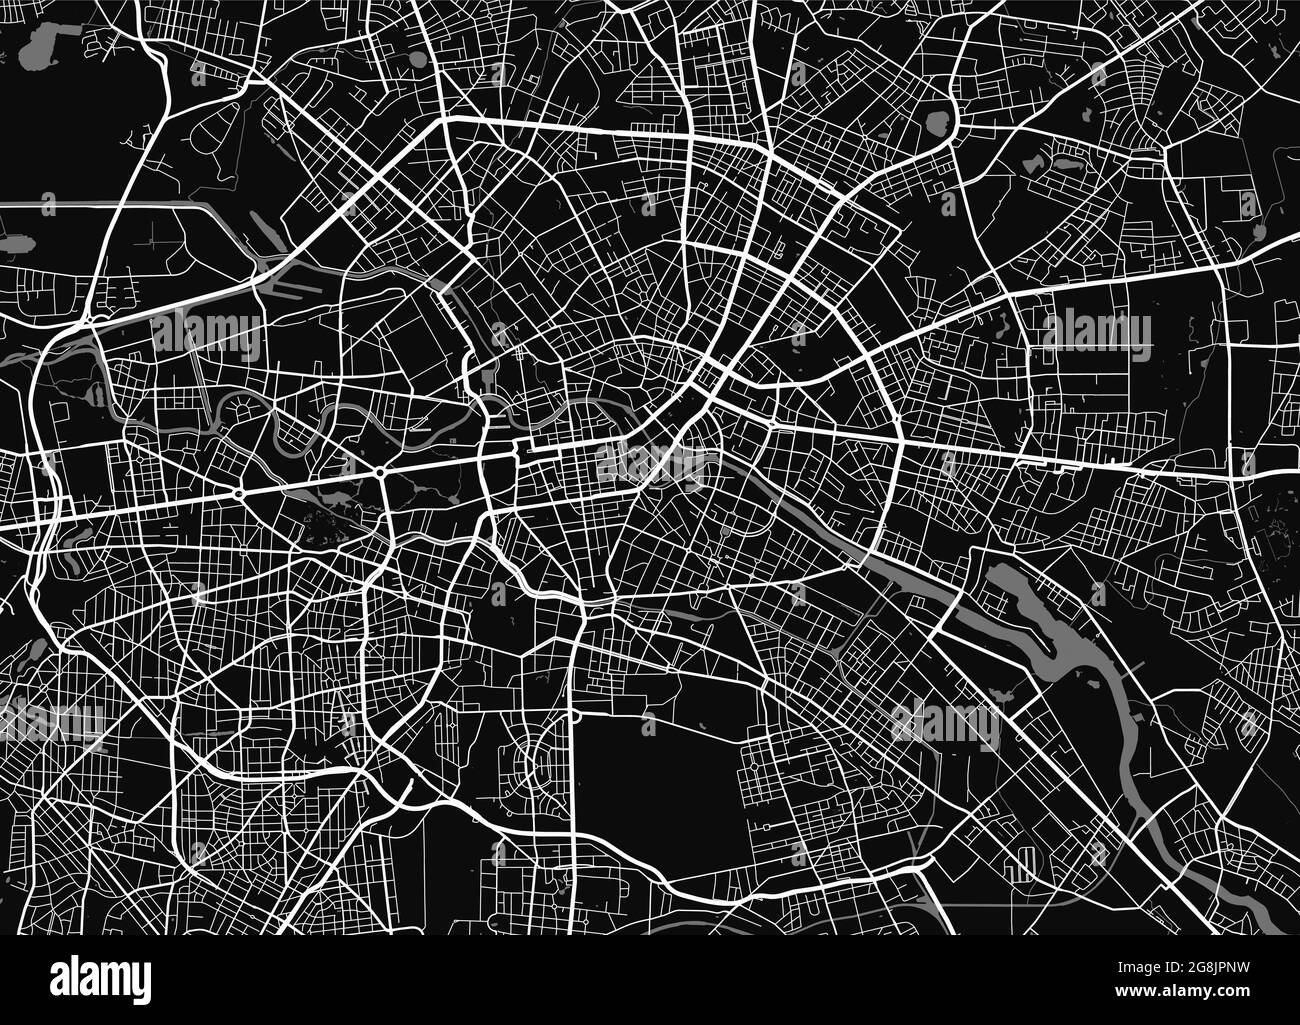 Stadtplan von Berlin. Vektorgrafik, Berlin Karte Graustufen Kunstposter. Straßenkarte mit Straßen, Ansicht der Metropolregion. Stock Vektor